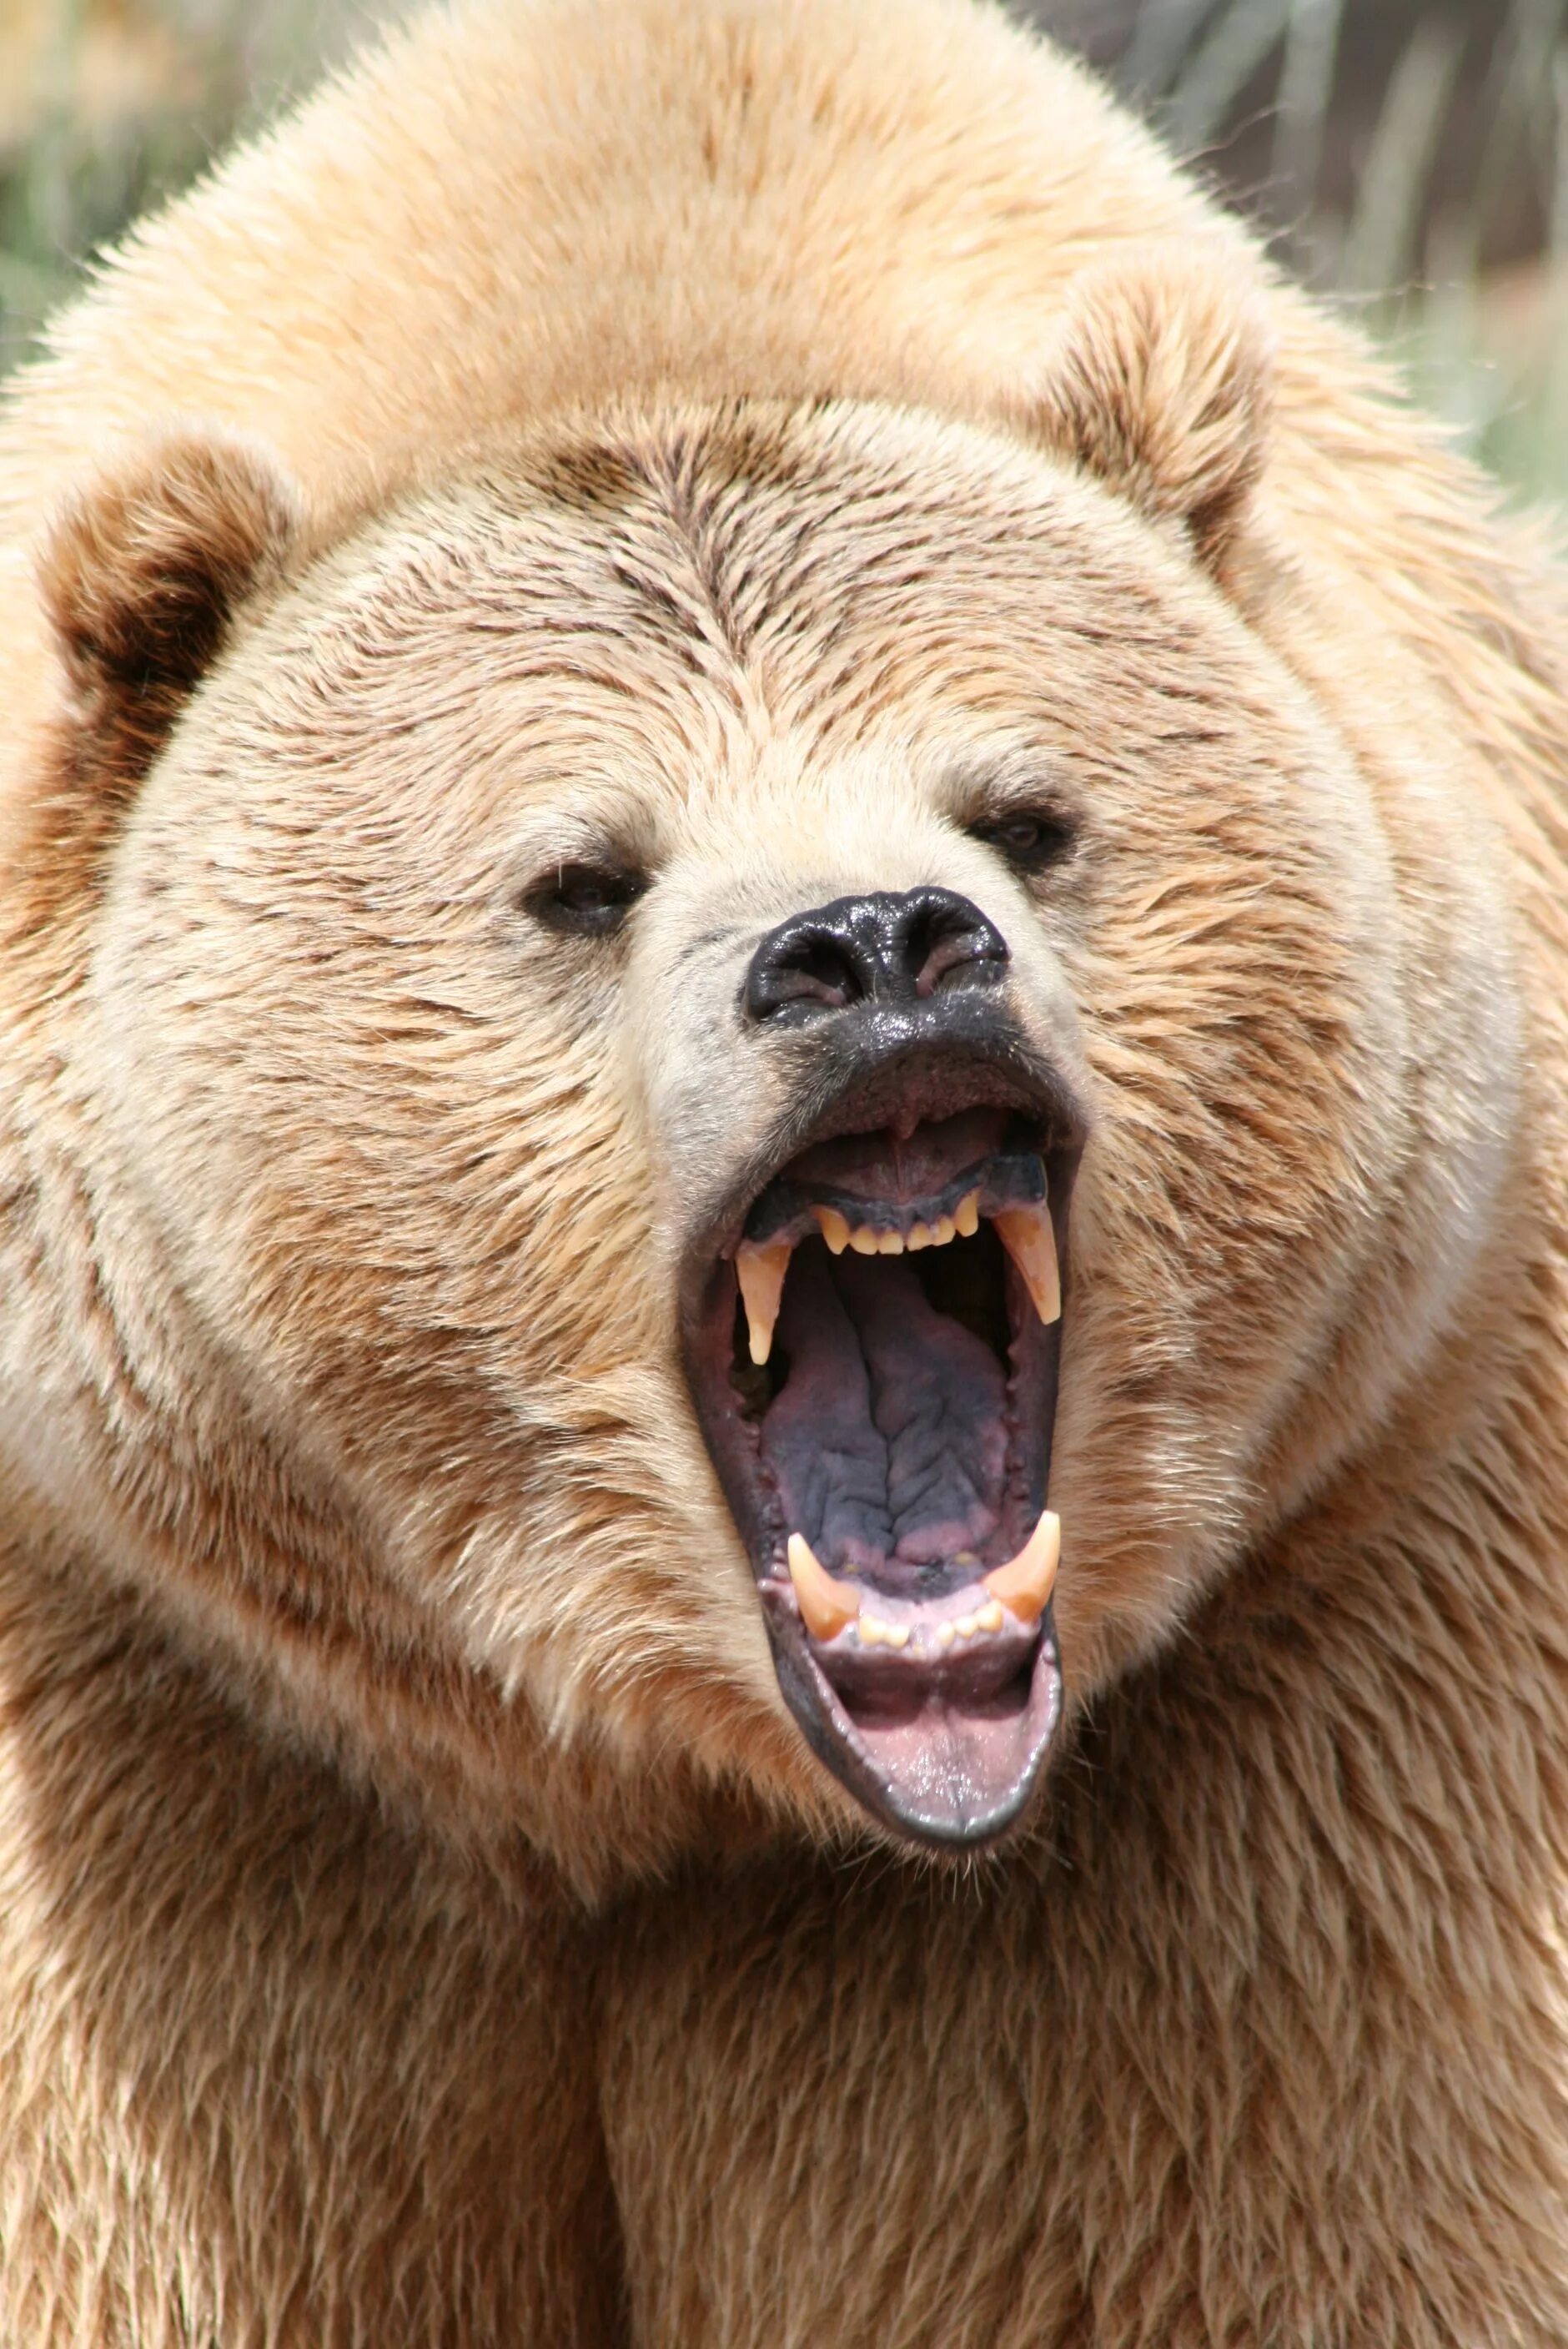 Bear s eye. Гризли и бурый медведь. Гризли Grizzly, Гризли, медведь.. Бурый медведь. Оскал медведя.